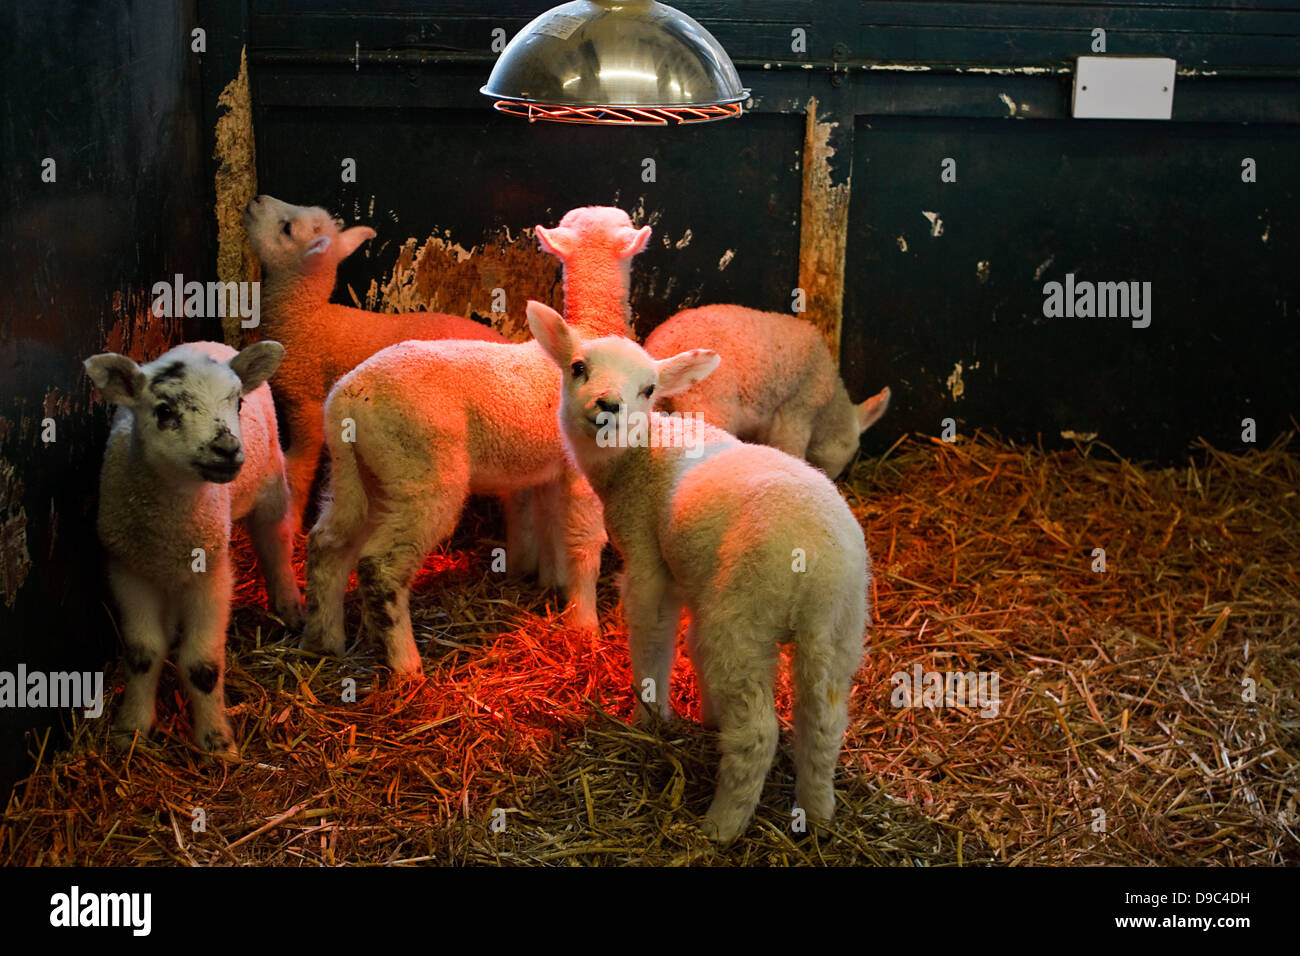 Los corderos jóvenes ser criado en el interior de una pluma pequeña por un agricultor bajo una lámpara de calor para mantenerlos calientes Foto de stock